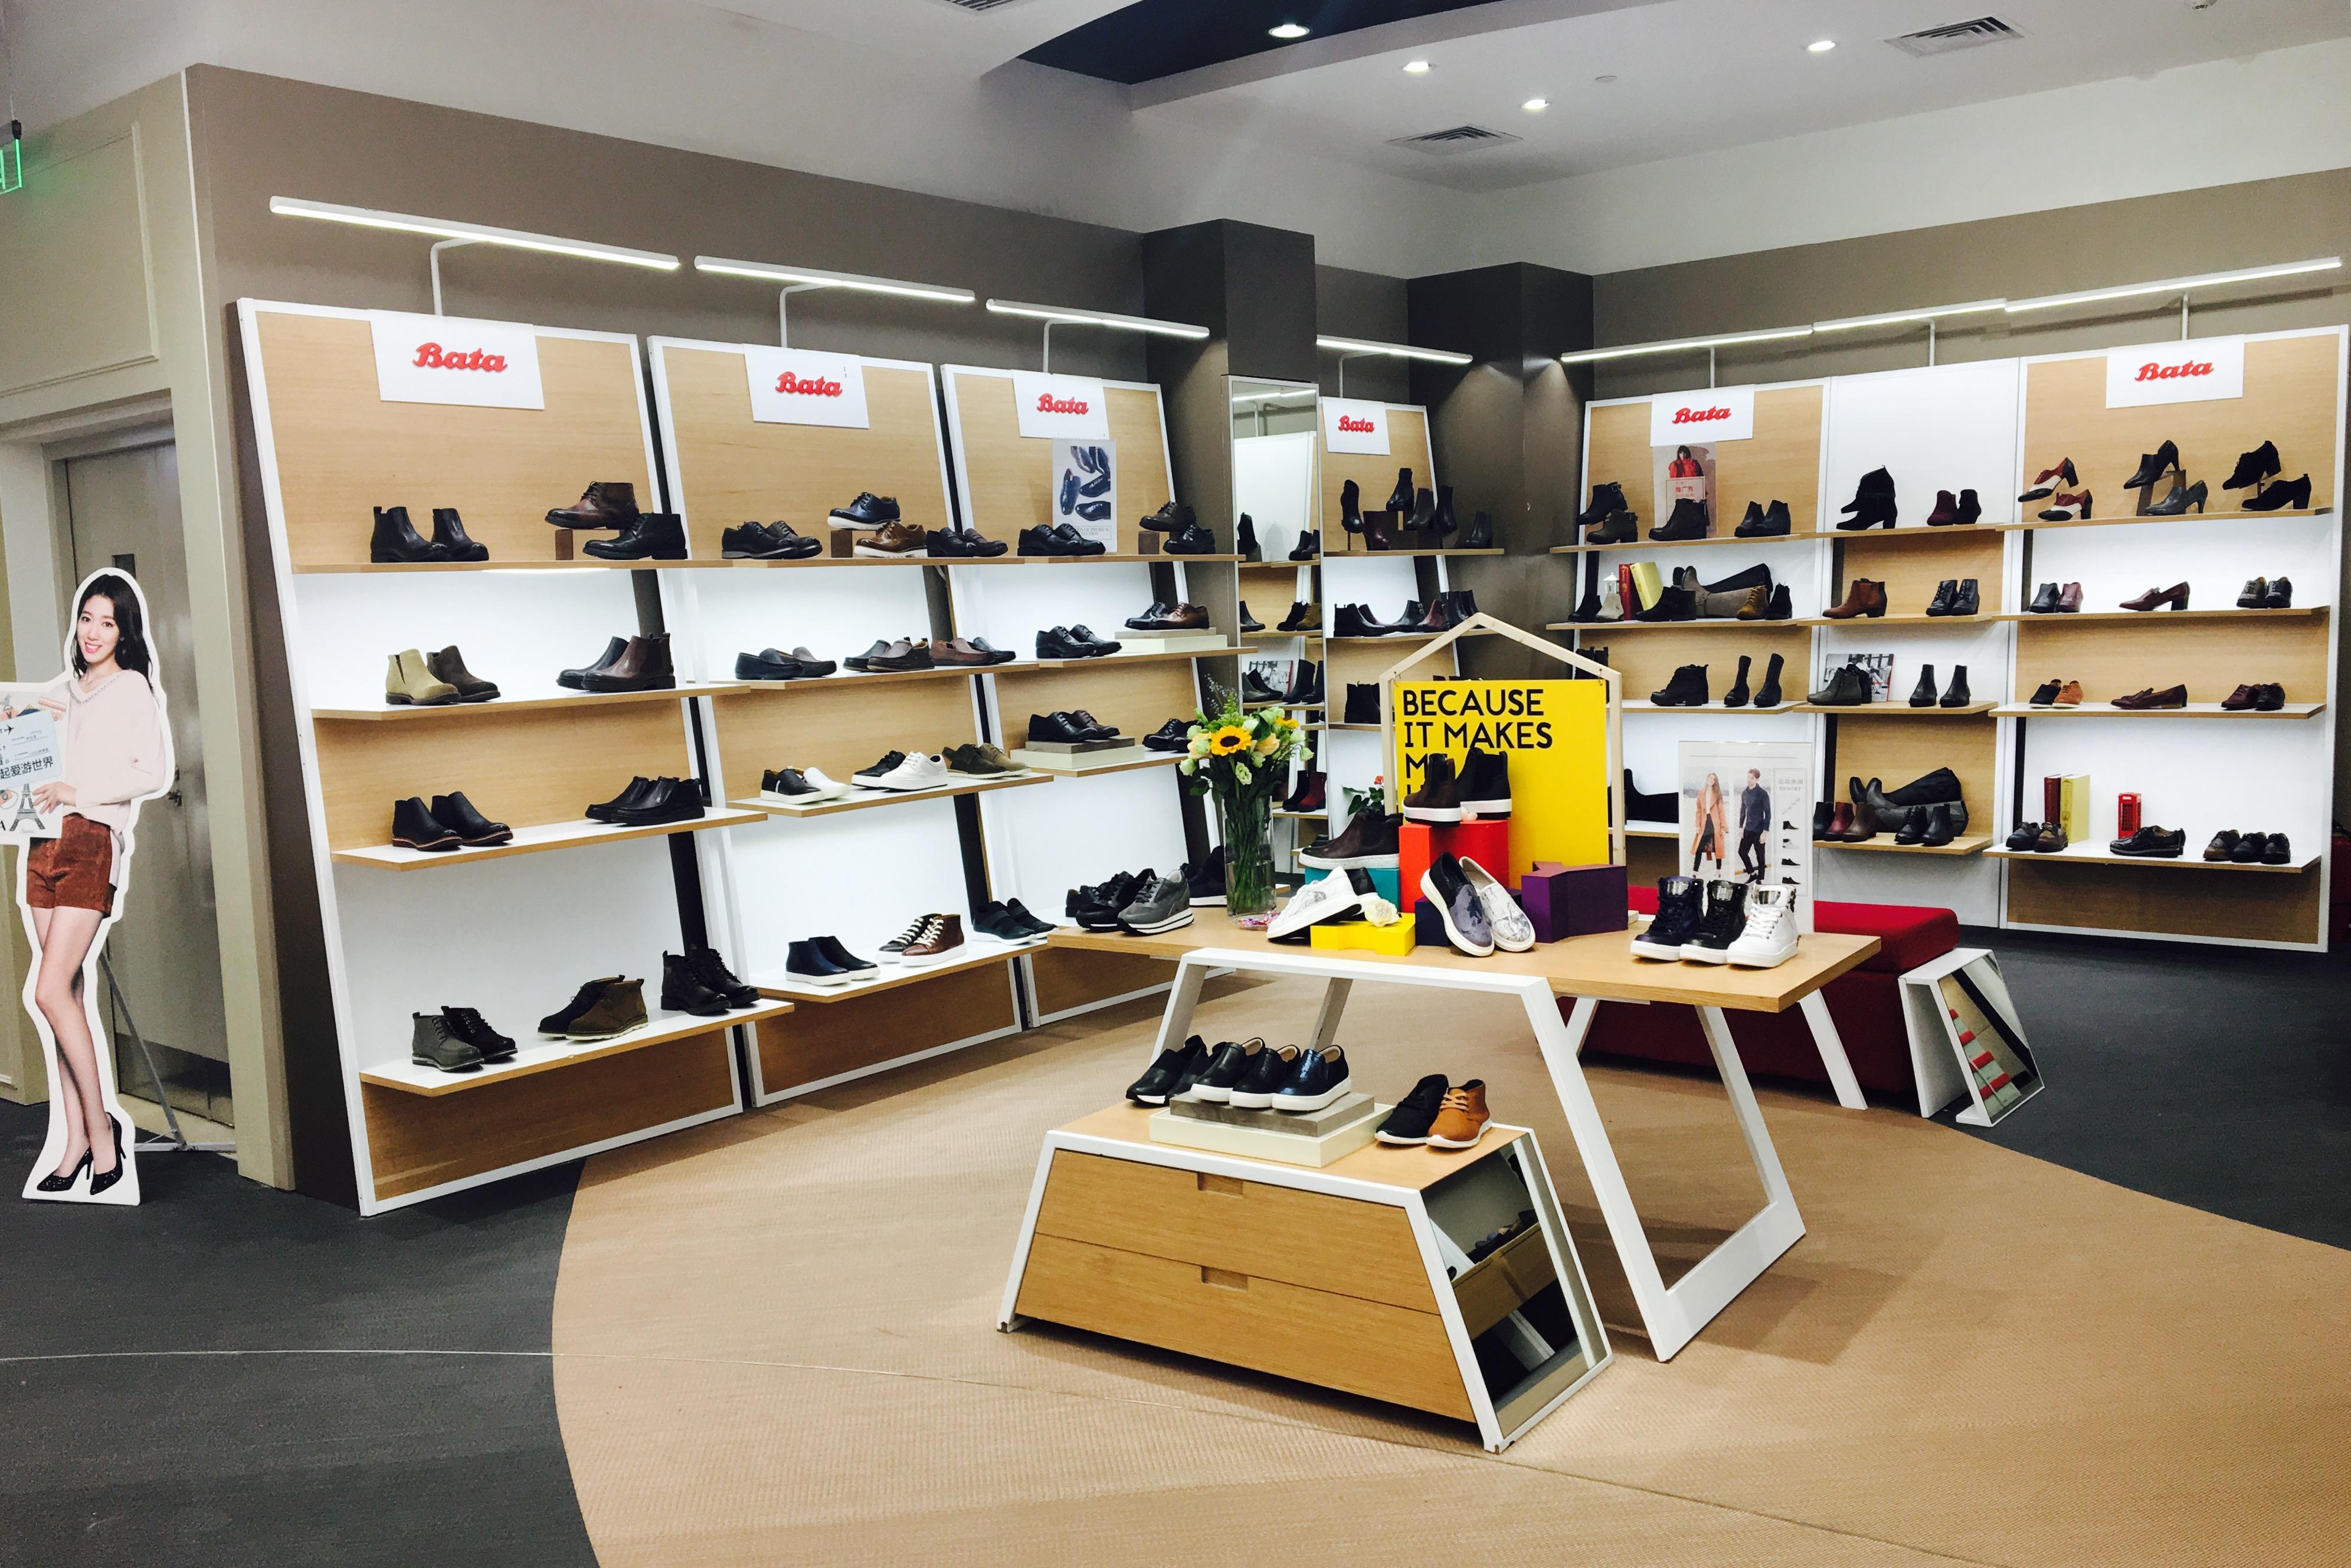 百丽在七宝万科广场以百货招商的方式打造了一个鞋区